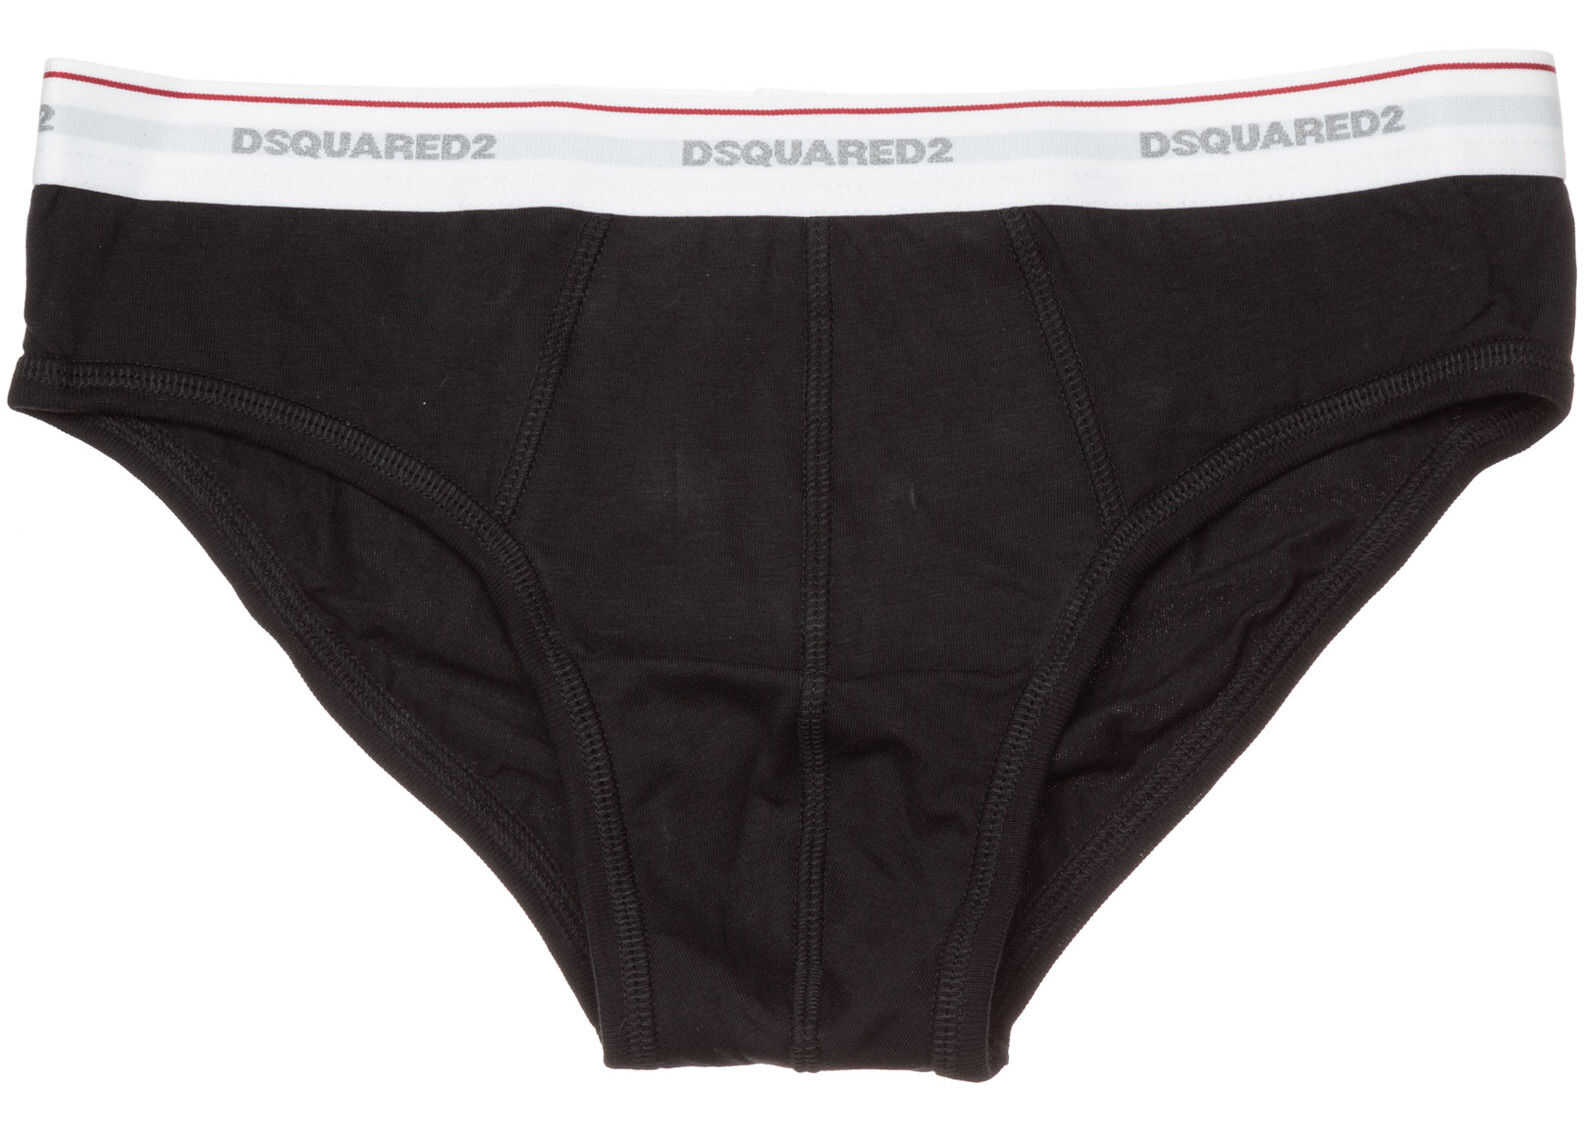 DSQUARED2 Underwear Briefs Black imagine